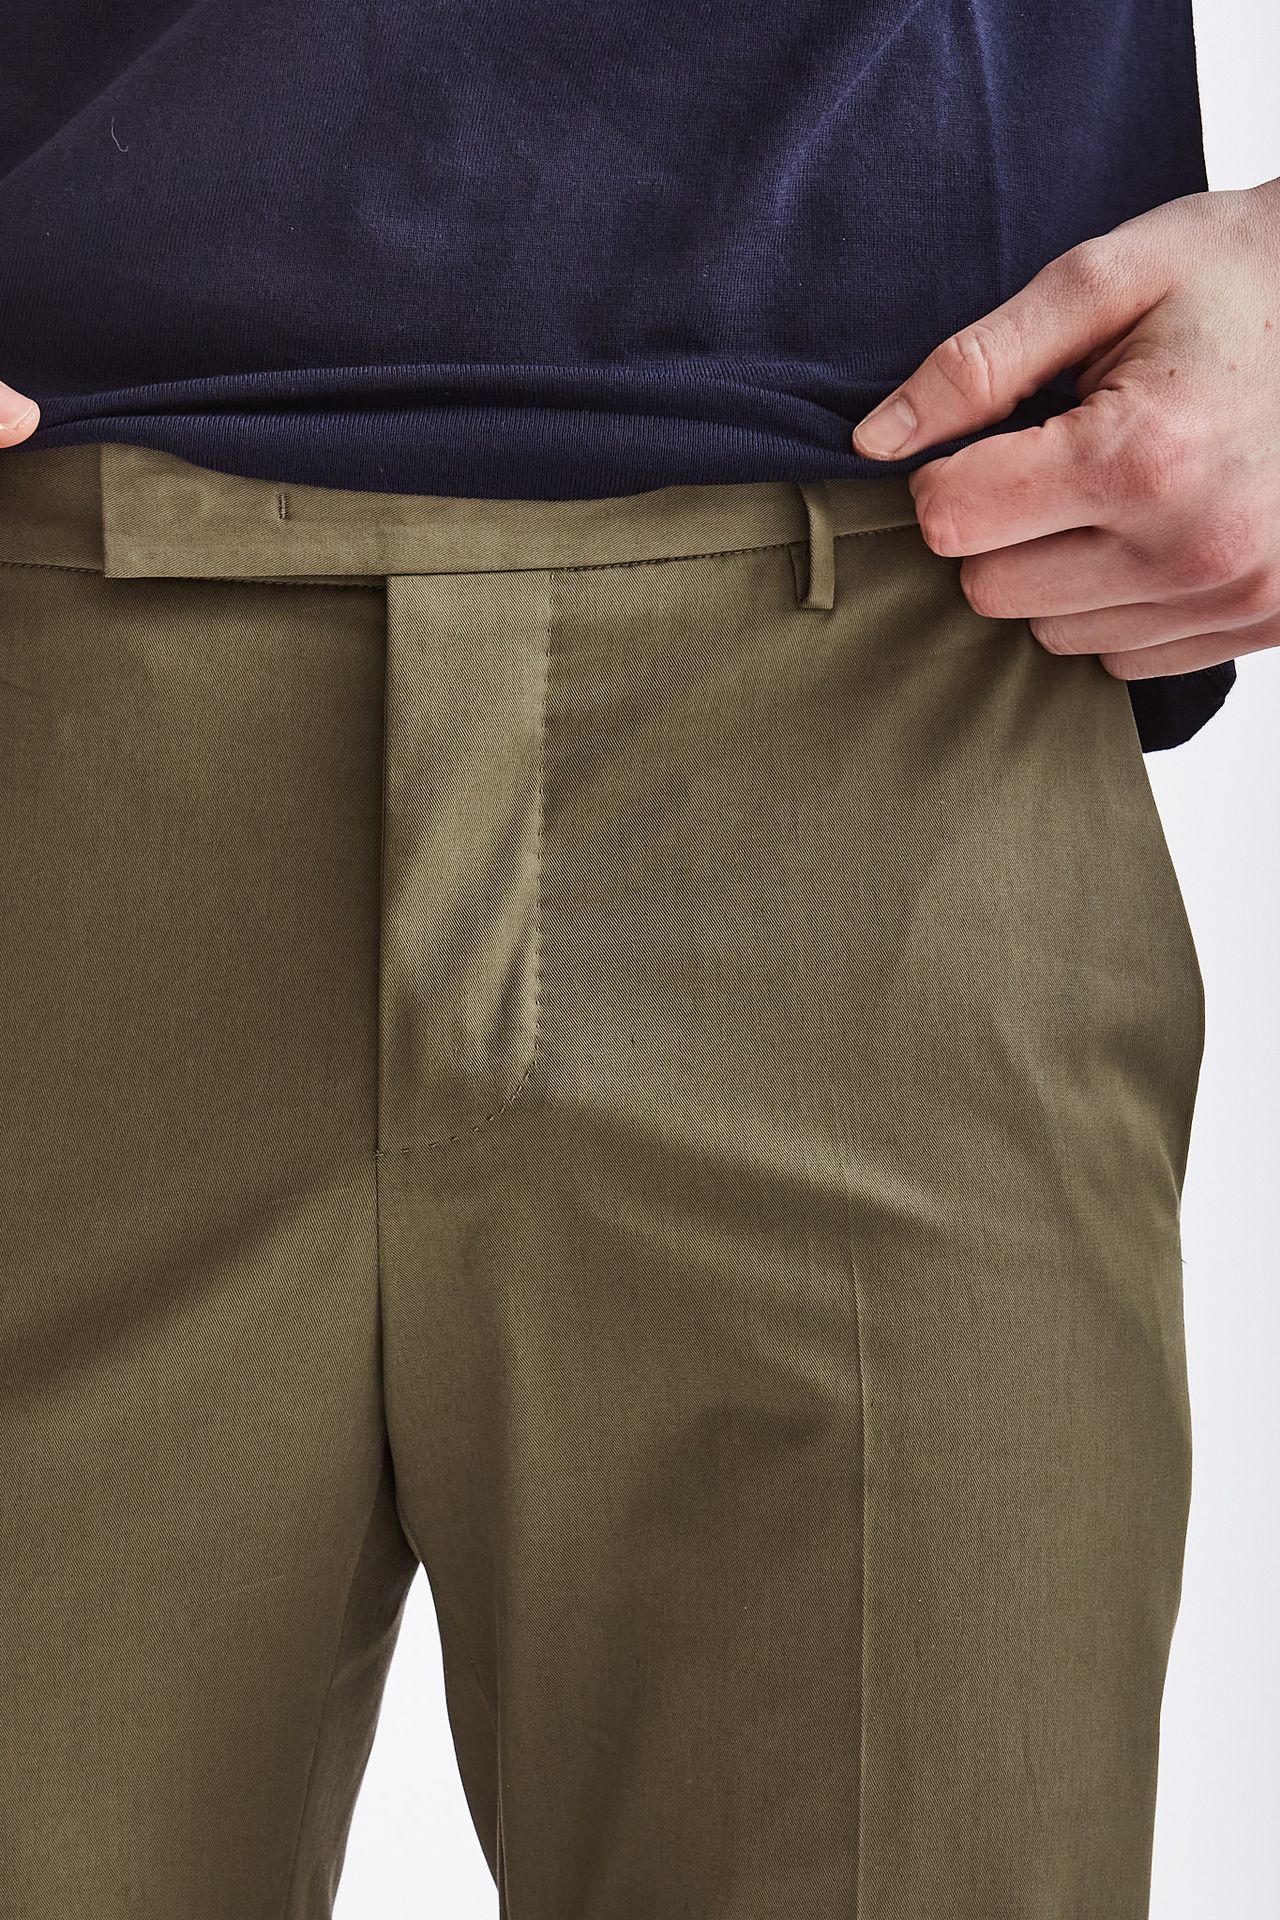 Pantalone EDGE-DIECI in cotone verde